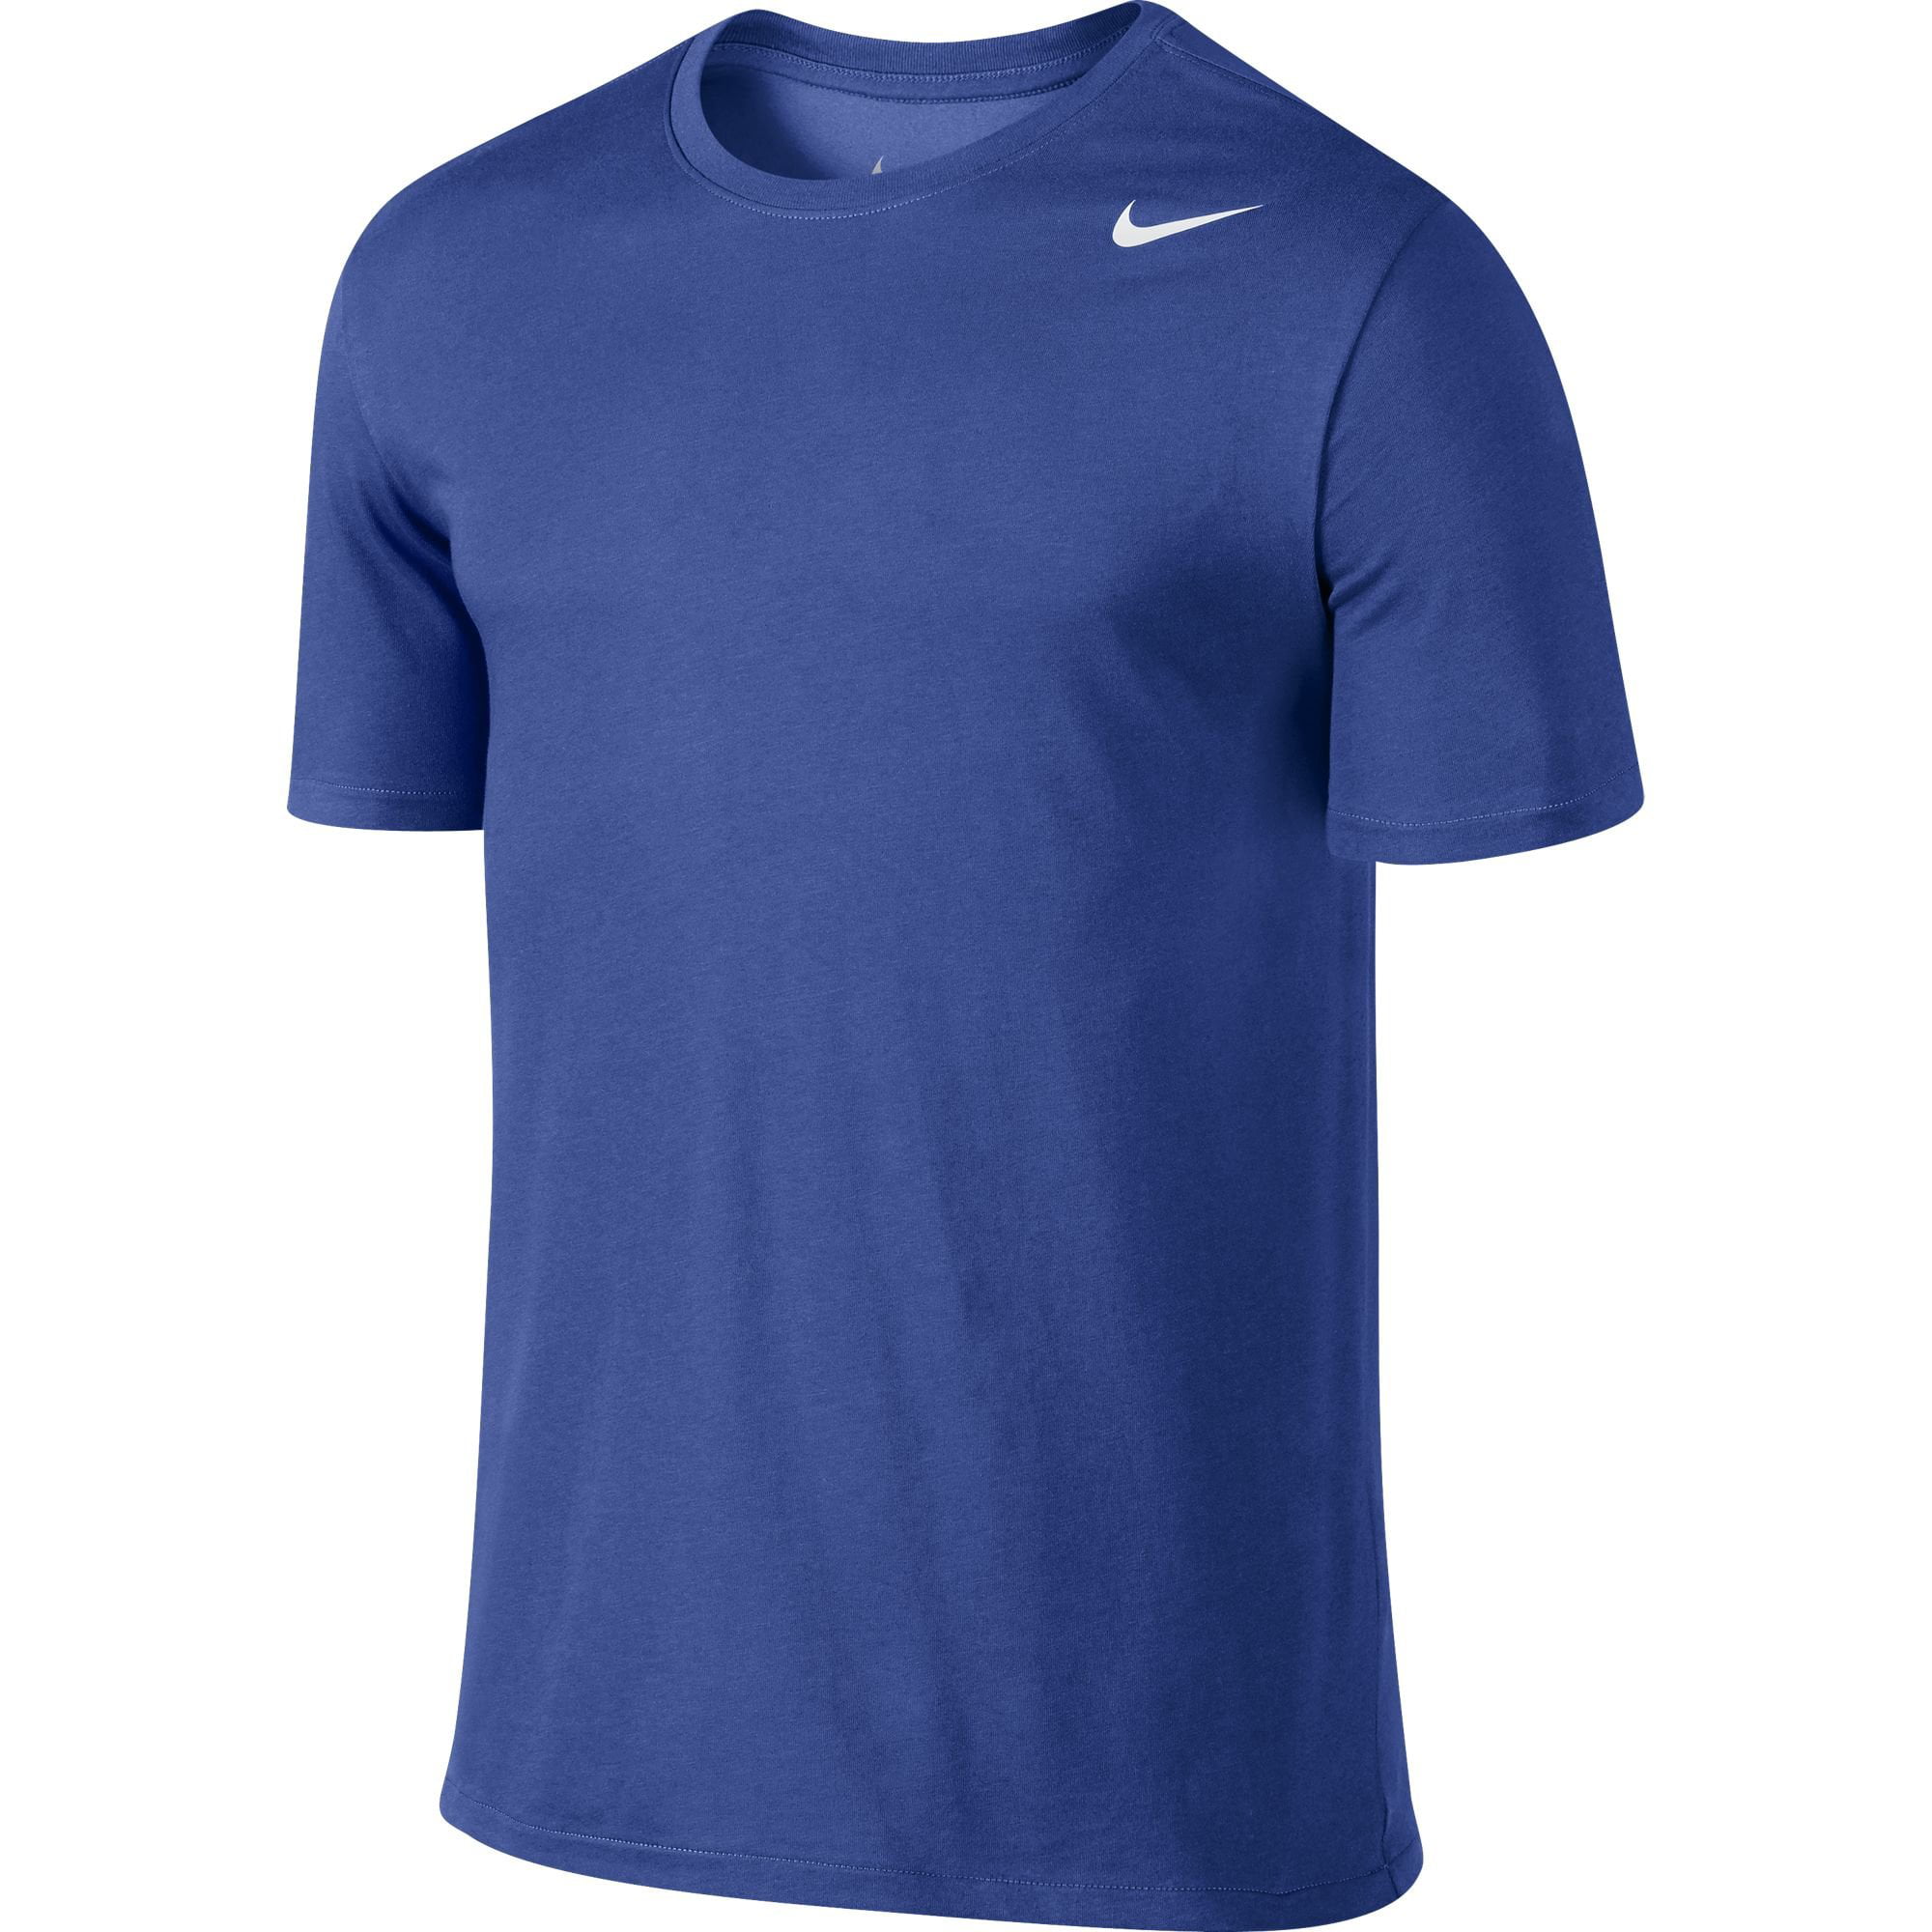 Nike Mens Cut Dri-Fit T-Shirt Blue S - Walmart.com